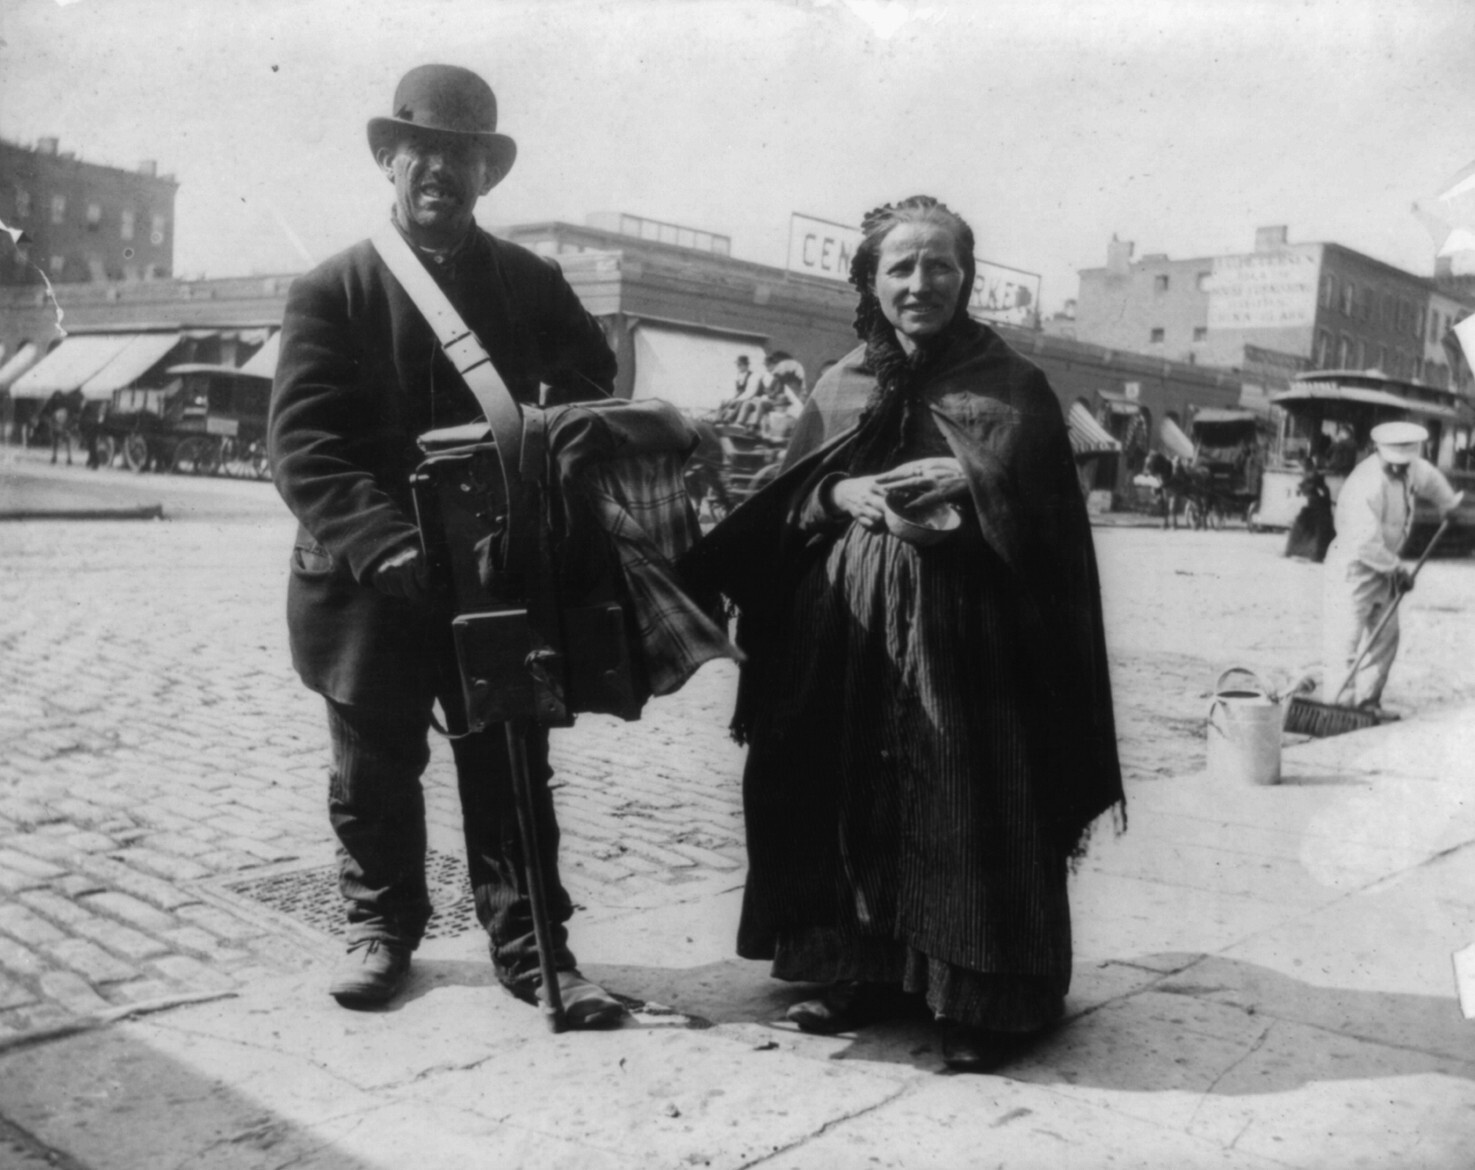 Шарманщик с женой, Нью-Йорк, 1897. Фотограф Алиса Остин